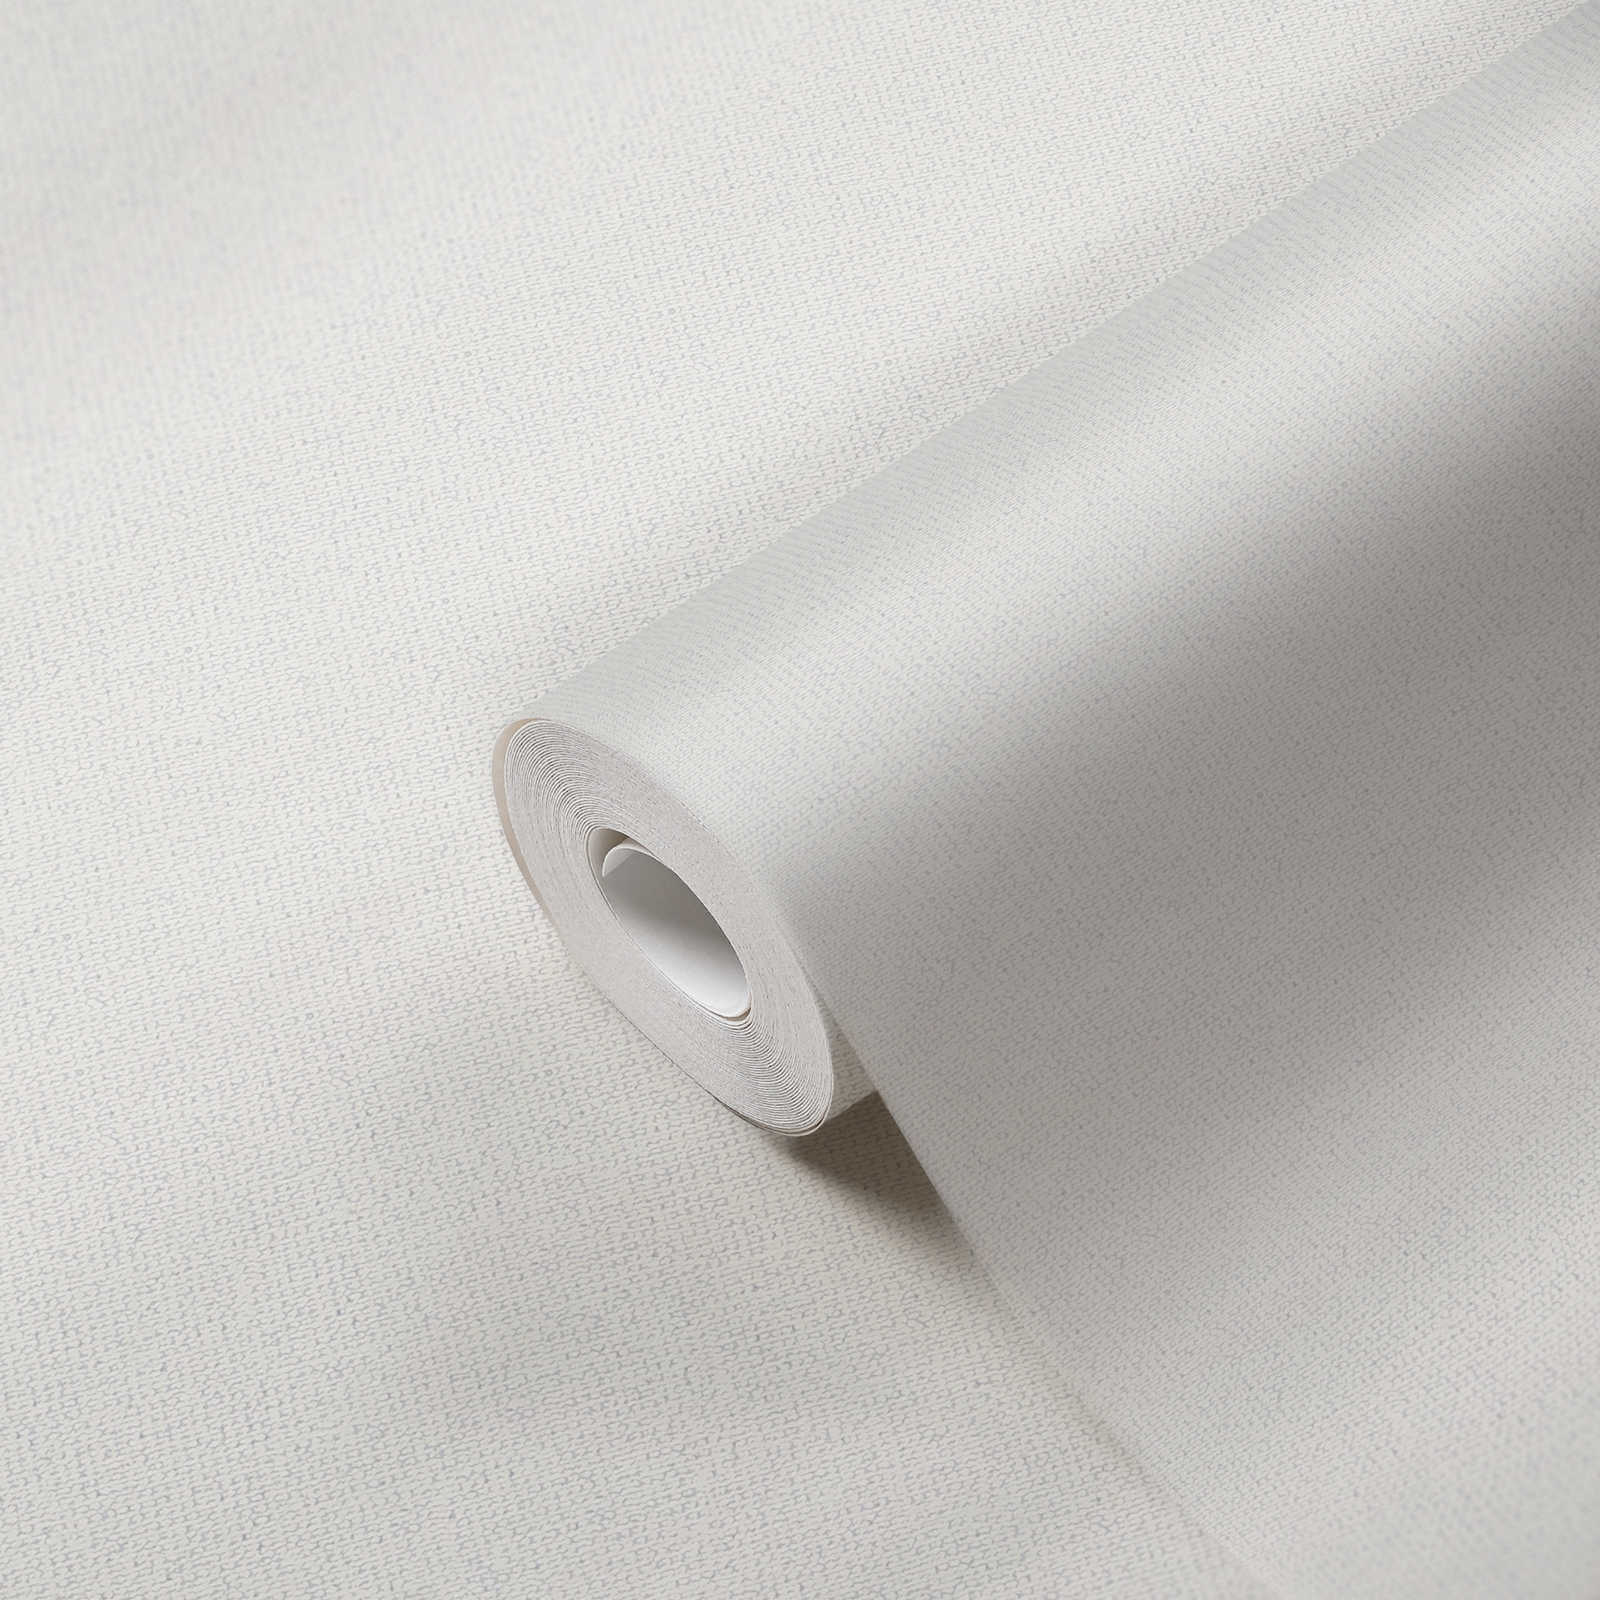             Plain linen look wallpaper with matt structure - white
        